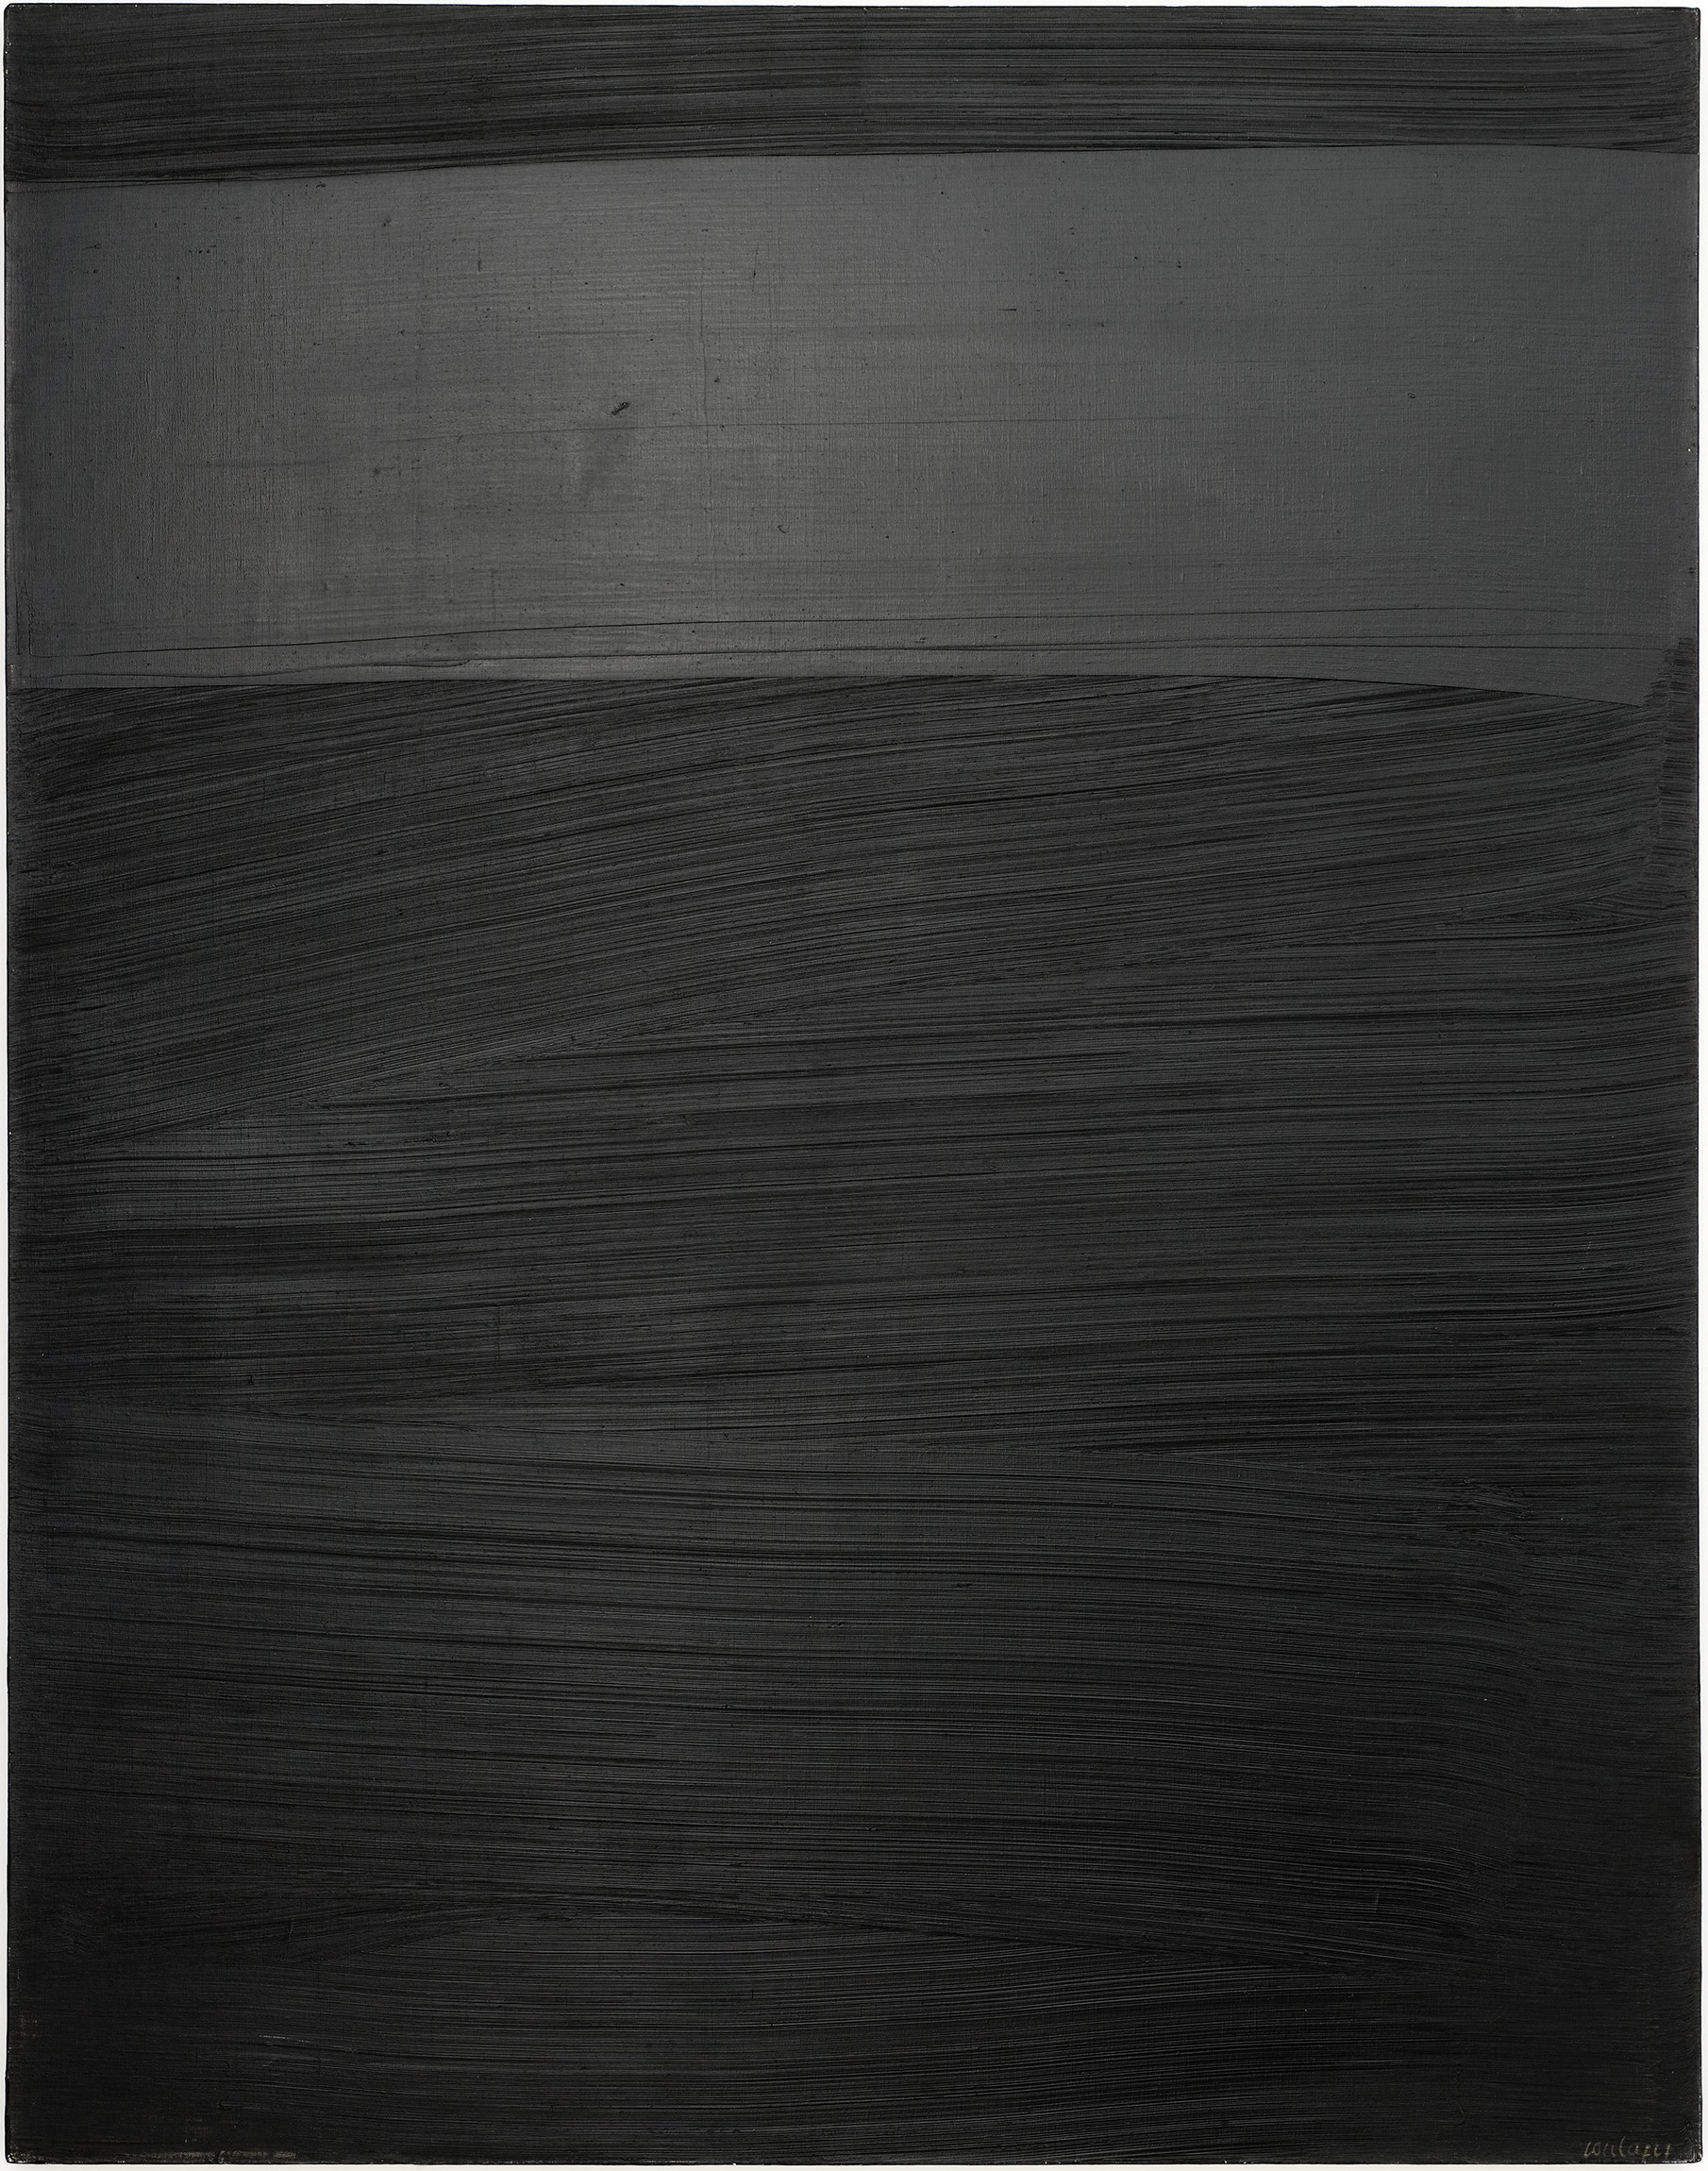 Pierre Soulages Peinture 162 × 127 cm, 14 avril 1979